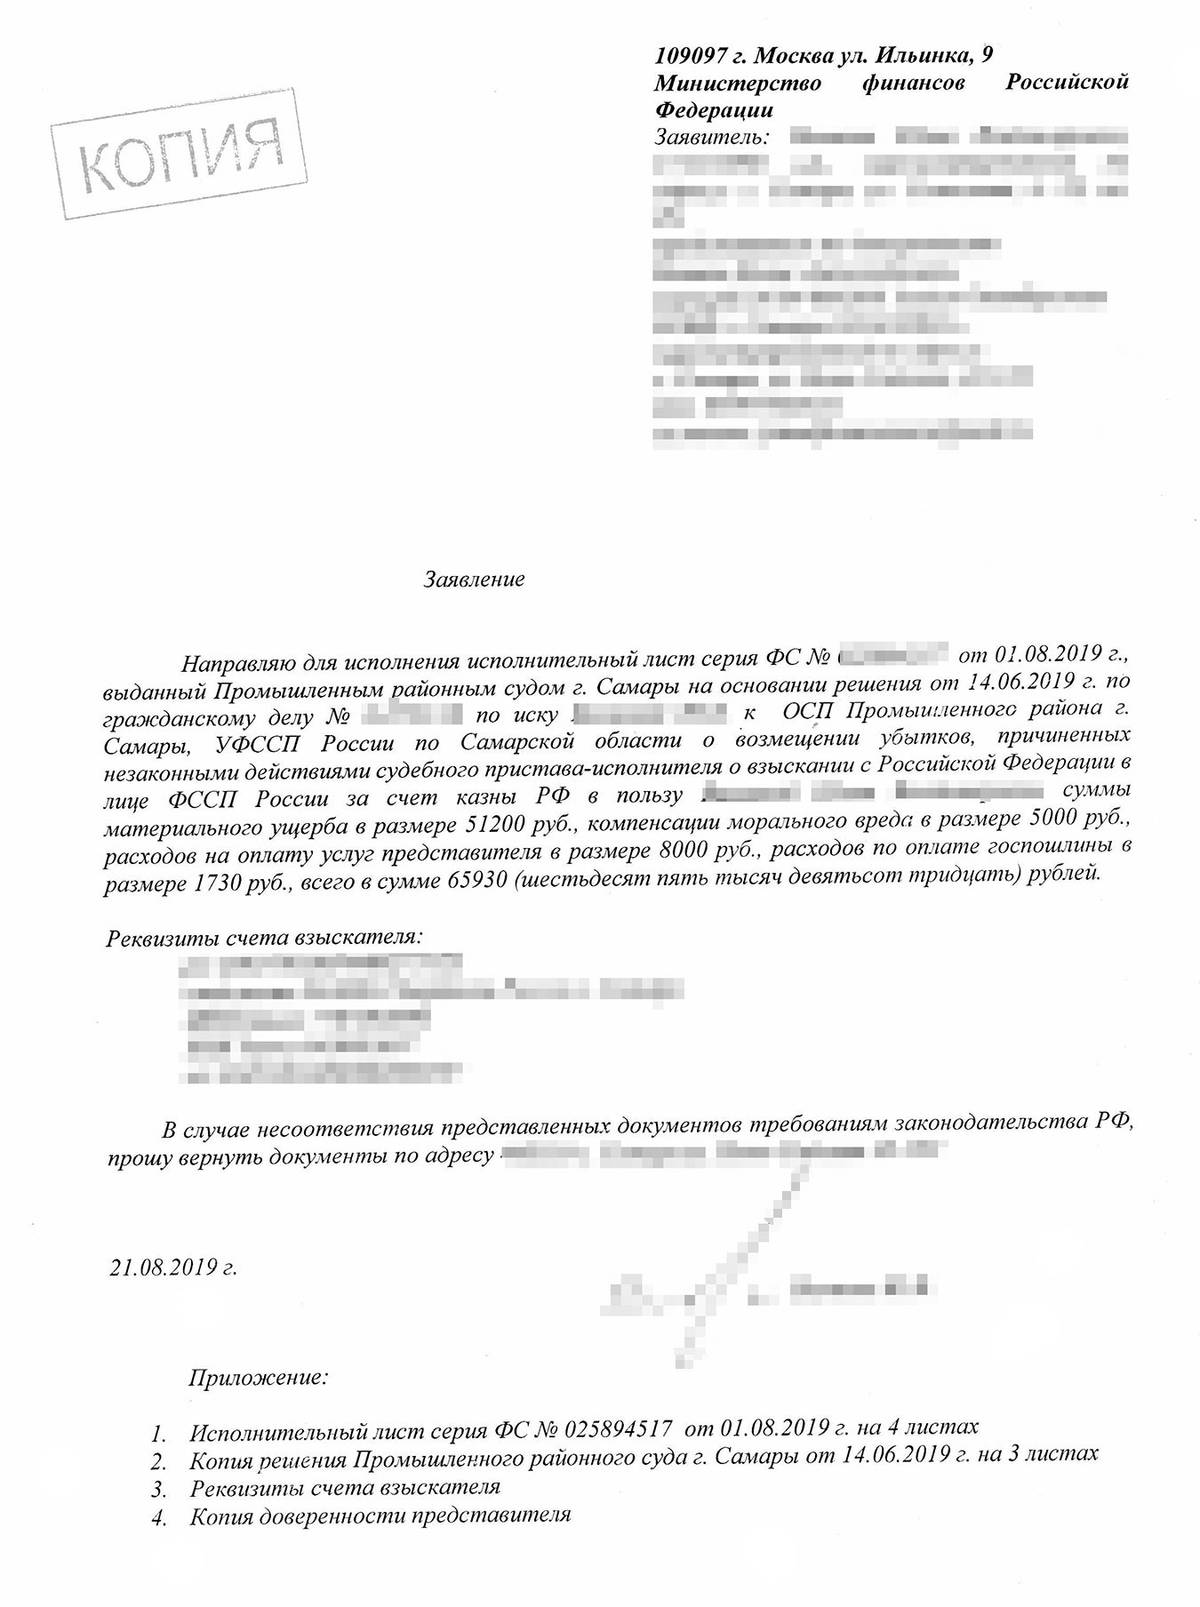 Заявление в Министерство финансов РФ лучше отправлять письмом с описью вложения и уведомлением о доставке